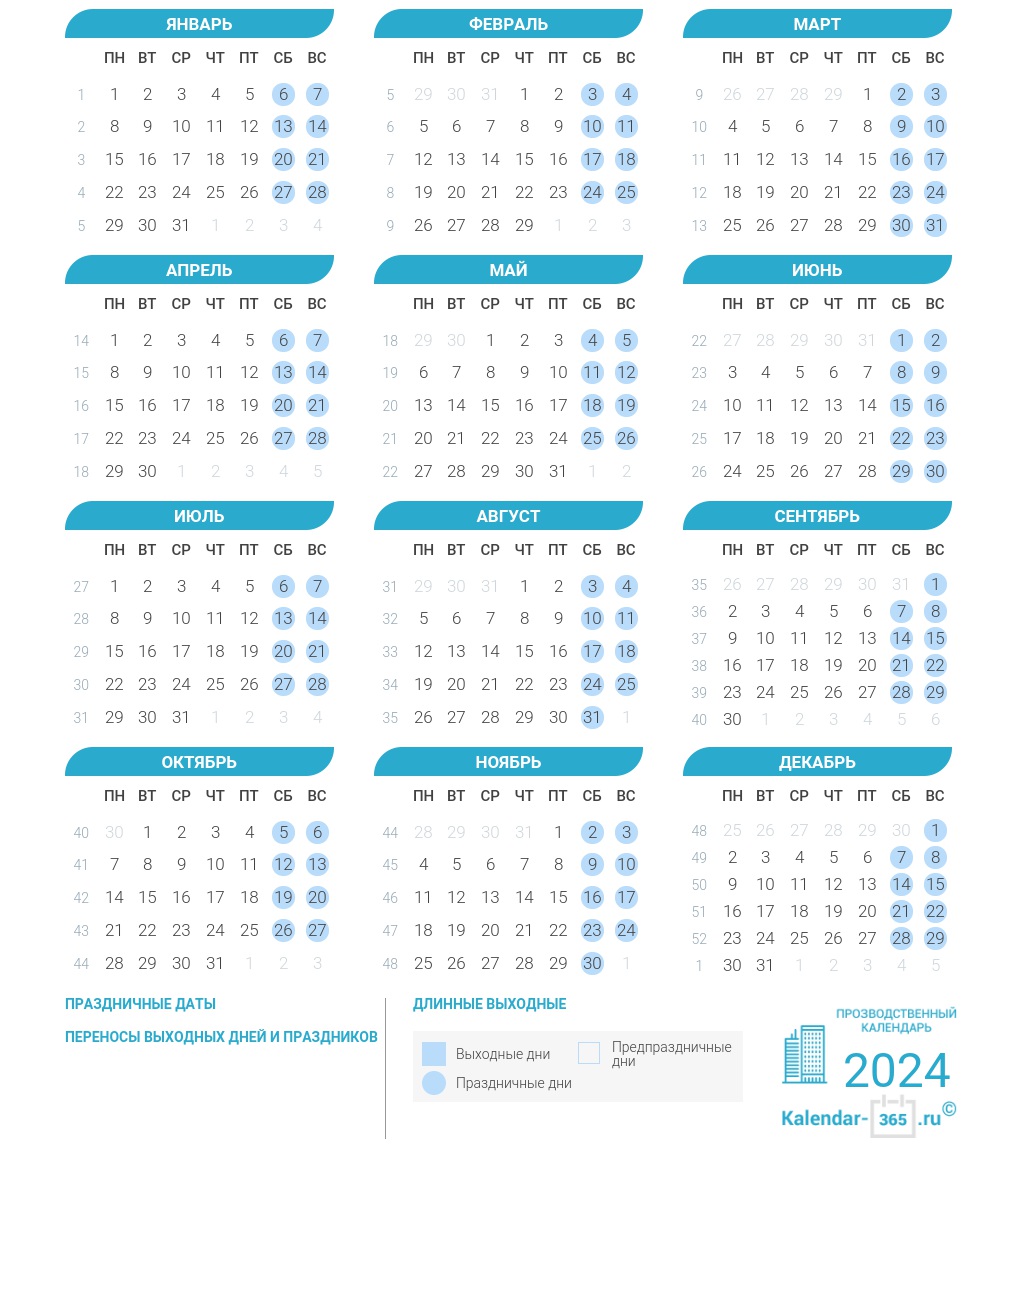 Производственный календарь на 2024 год в России